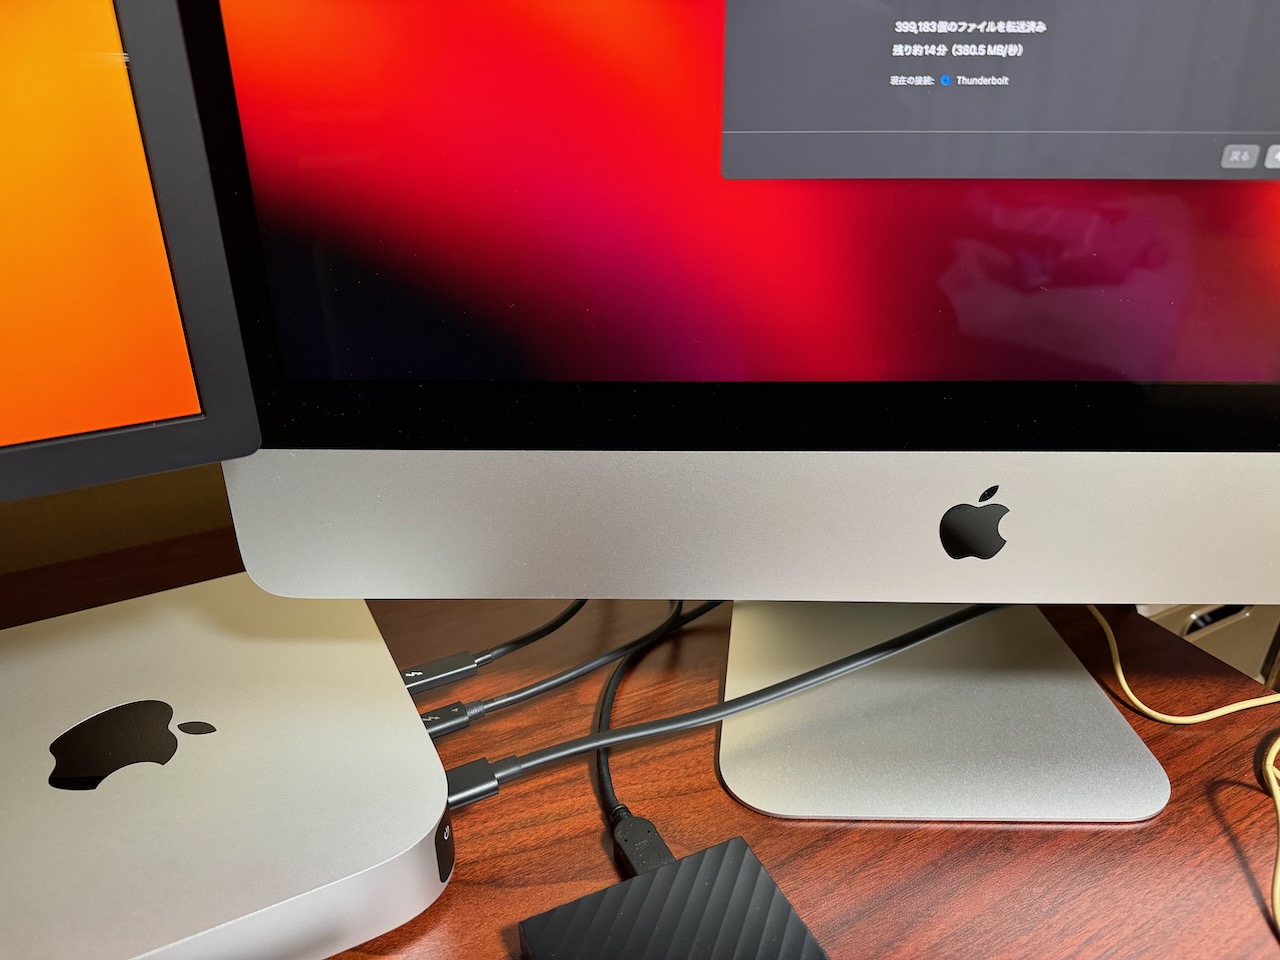 移行アシスタント実行中の写真。2台のMacは中央のThunderbolt 4ケーブルで直接つながっている。iMacの画面には転送時間が「残り14分」と表示されている。